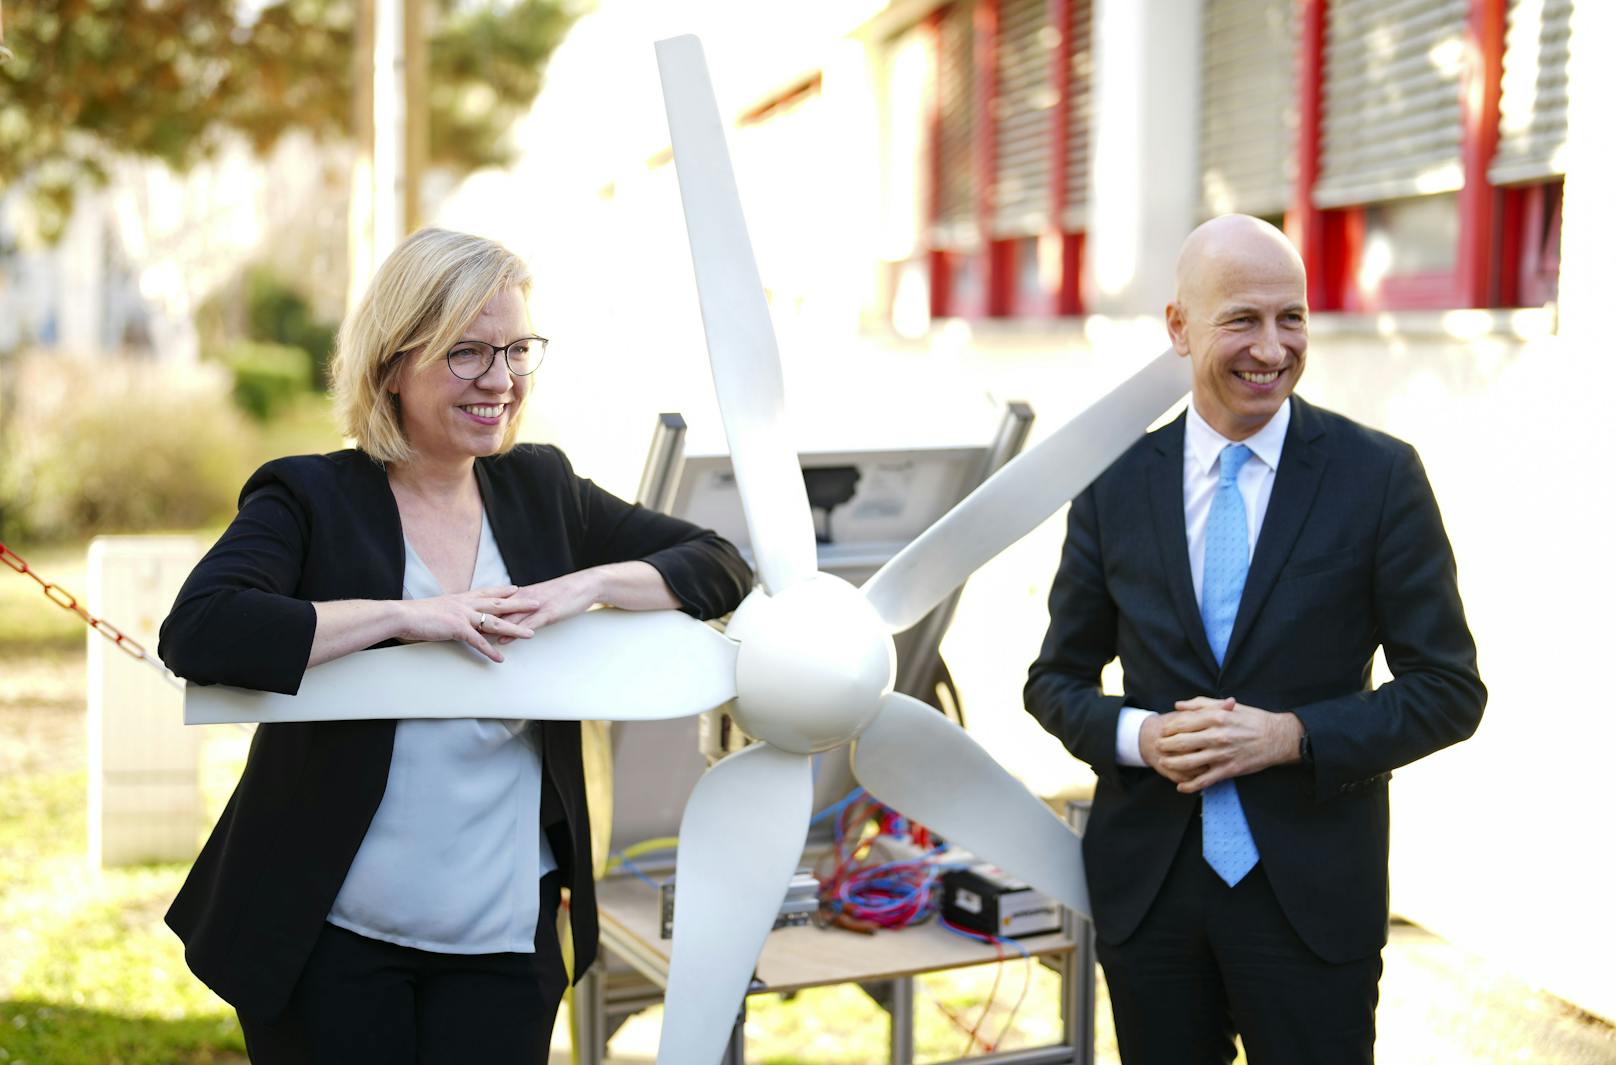 Umweltministerin Leonore Gewessler, im Bild neben Arbeitsminister Kocher, setzt auf den Ausbau erneuerbarer Energieformen.